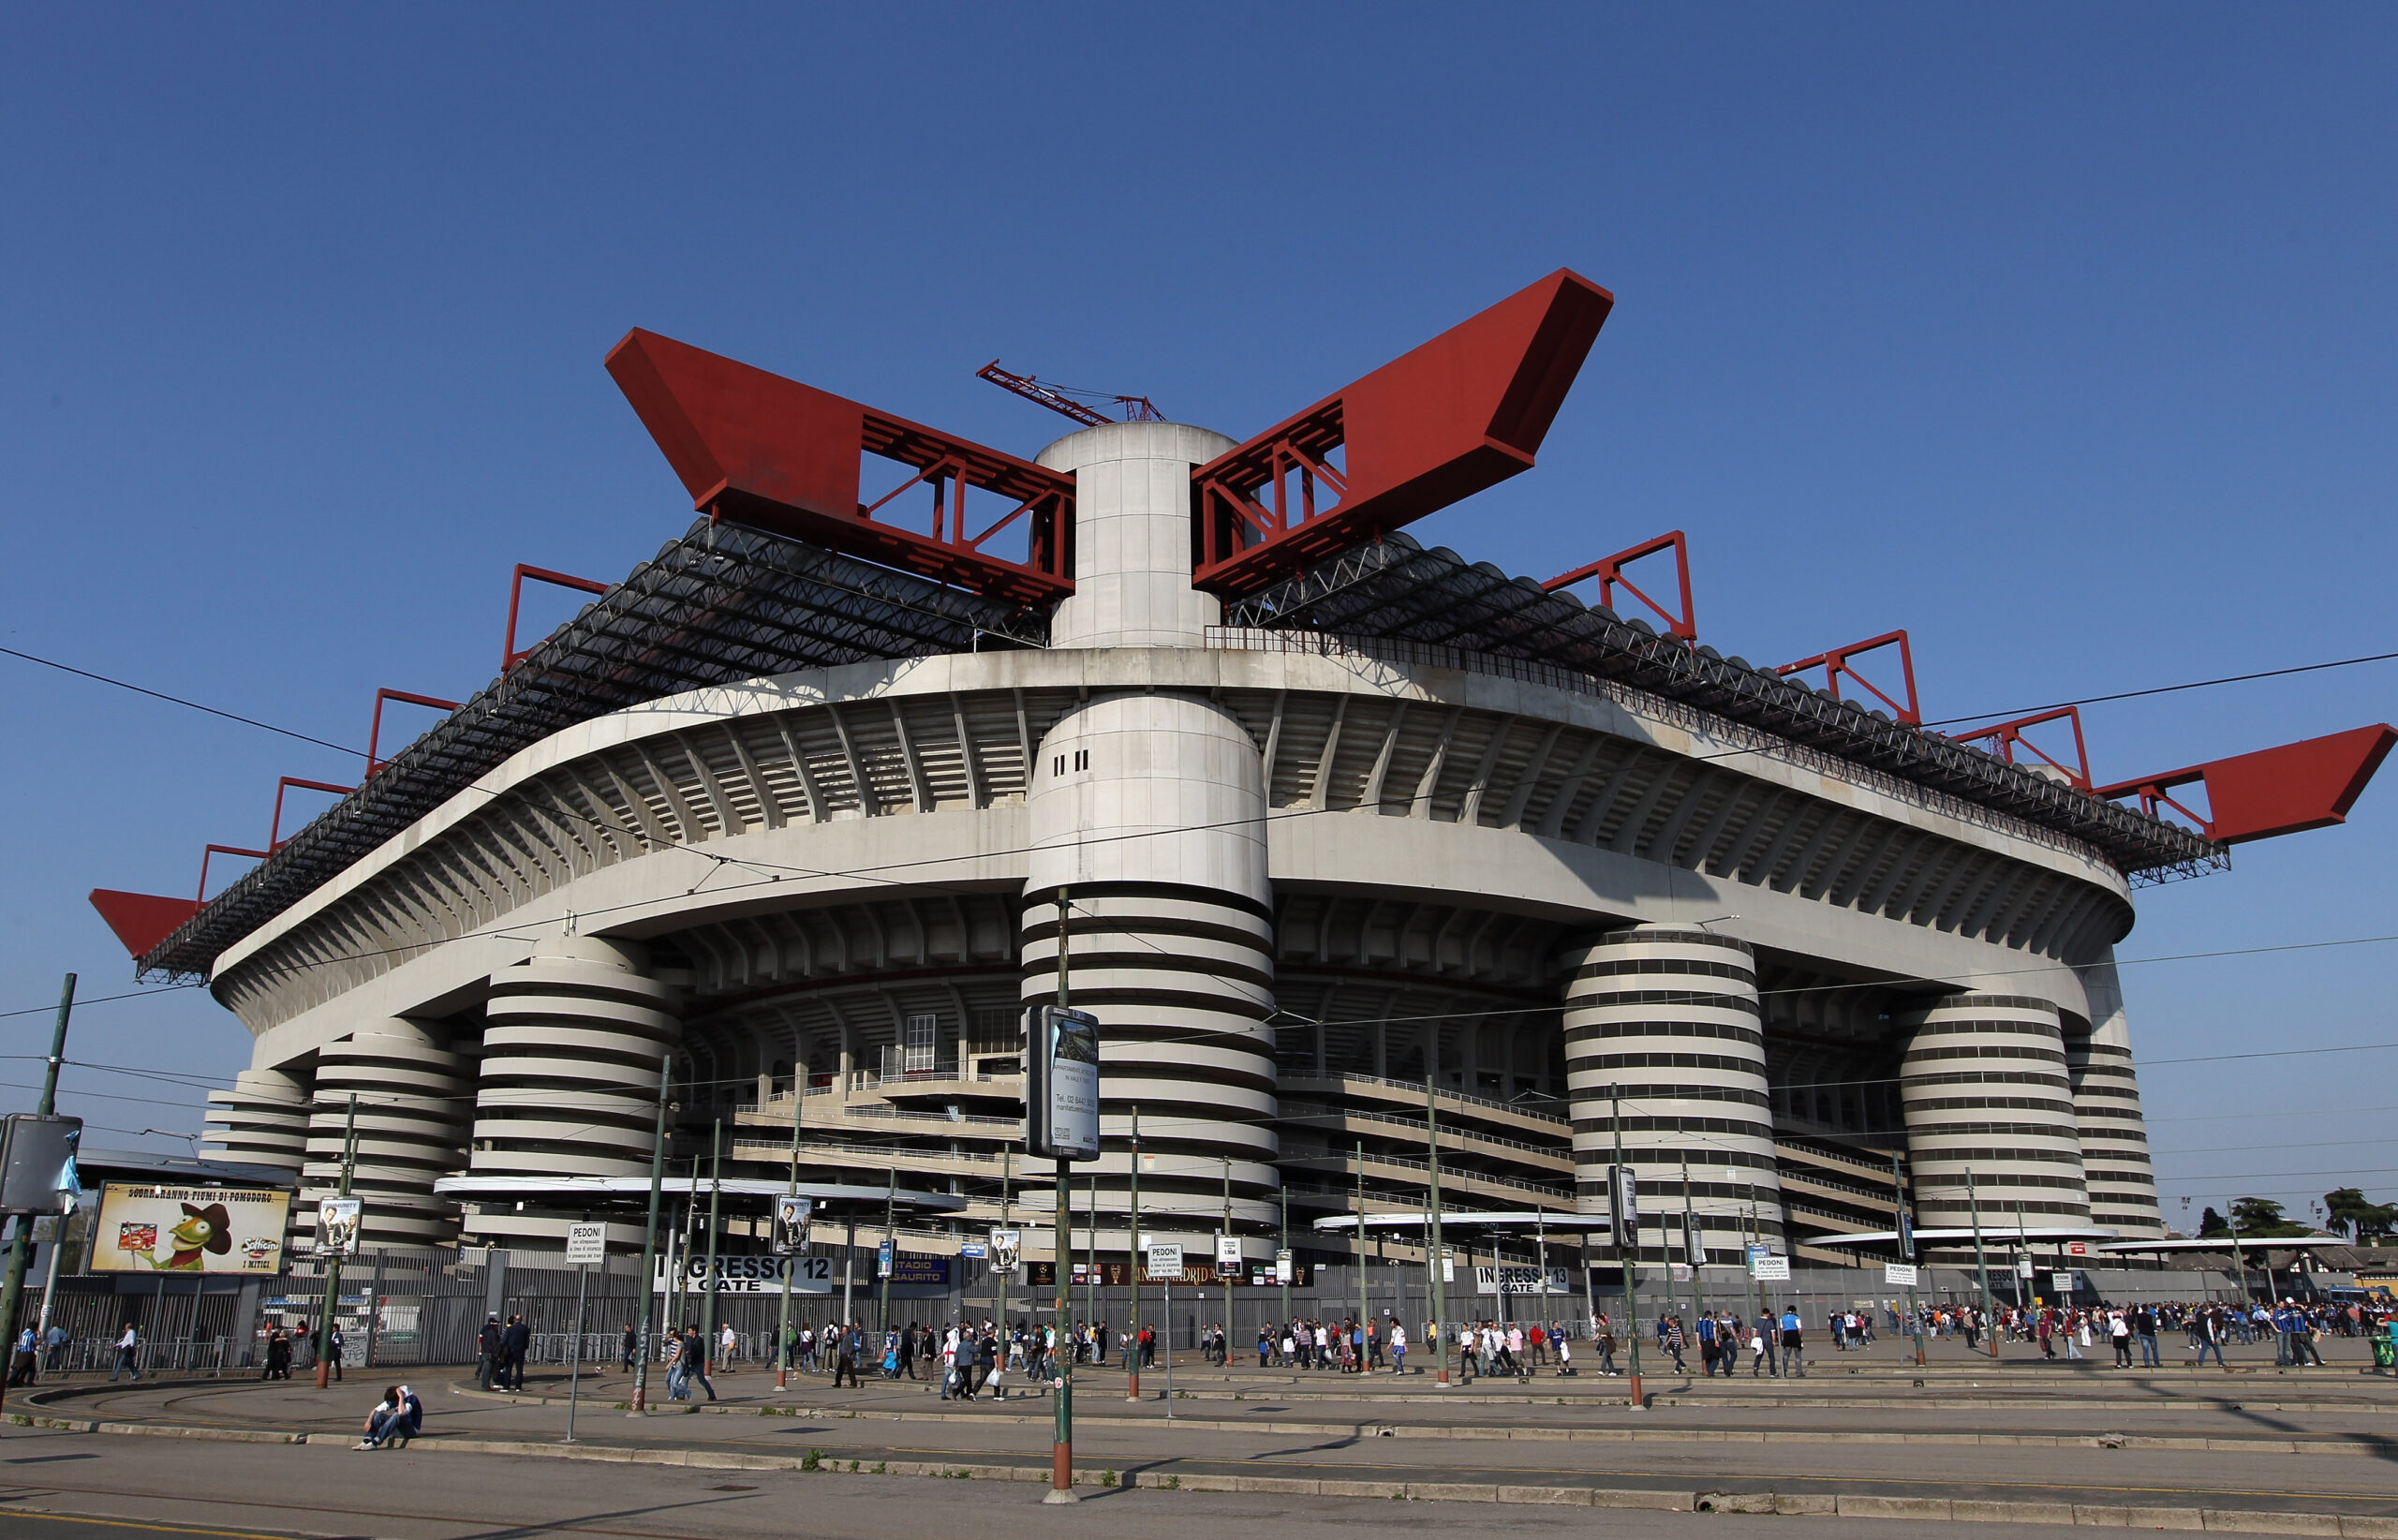 The Illusion es un video de fanáticos saliendo del estadio San Siro en Italia, el hogar del club de fútbol AC Milan.